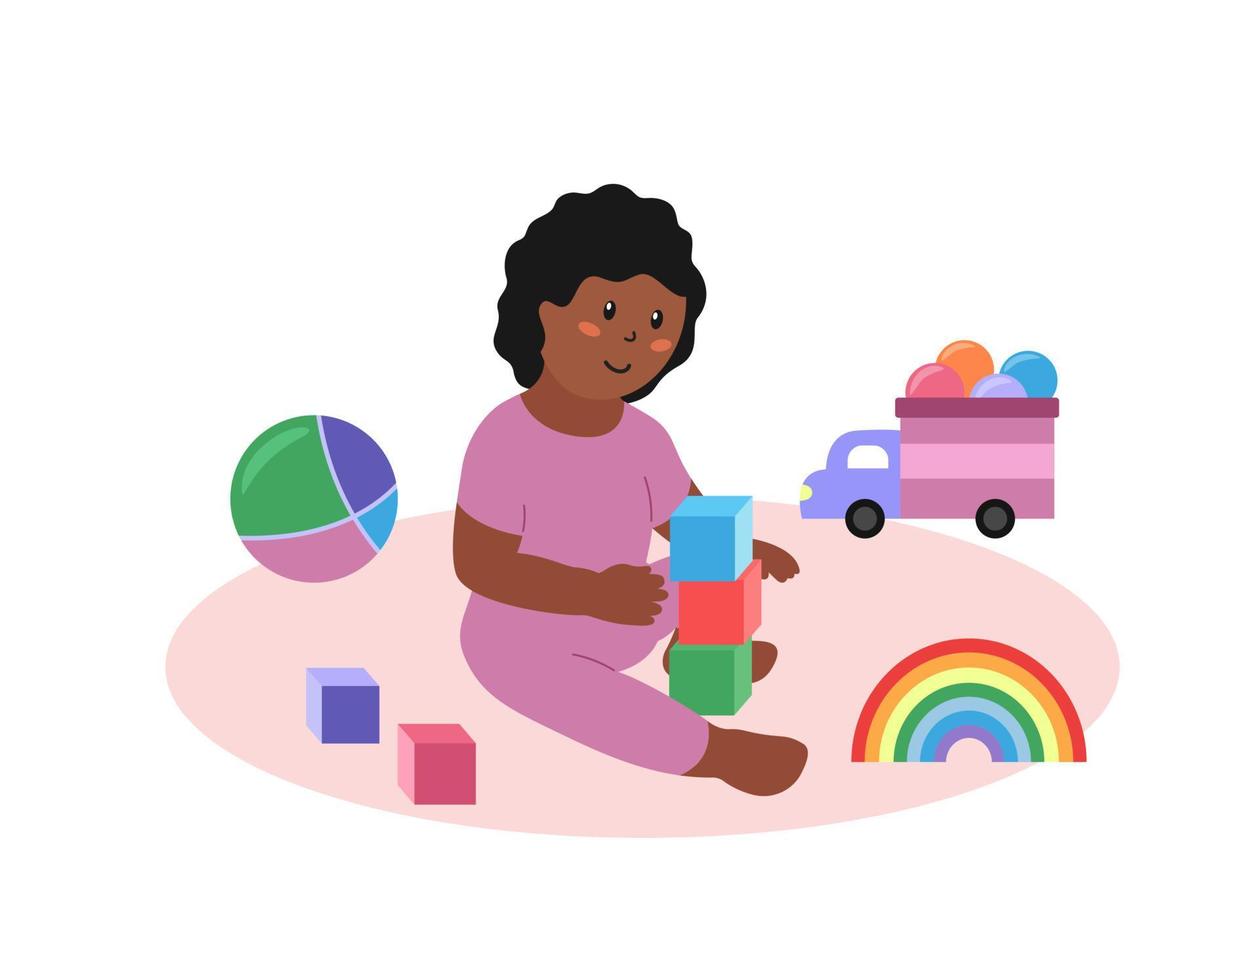 niña sentada y jugando juguetes aislados. niño niño afroamericano feliz con cubos, coche, pelota y otros juguetes coloridos. vector ilustración plana